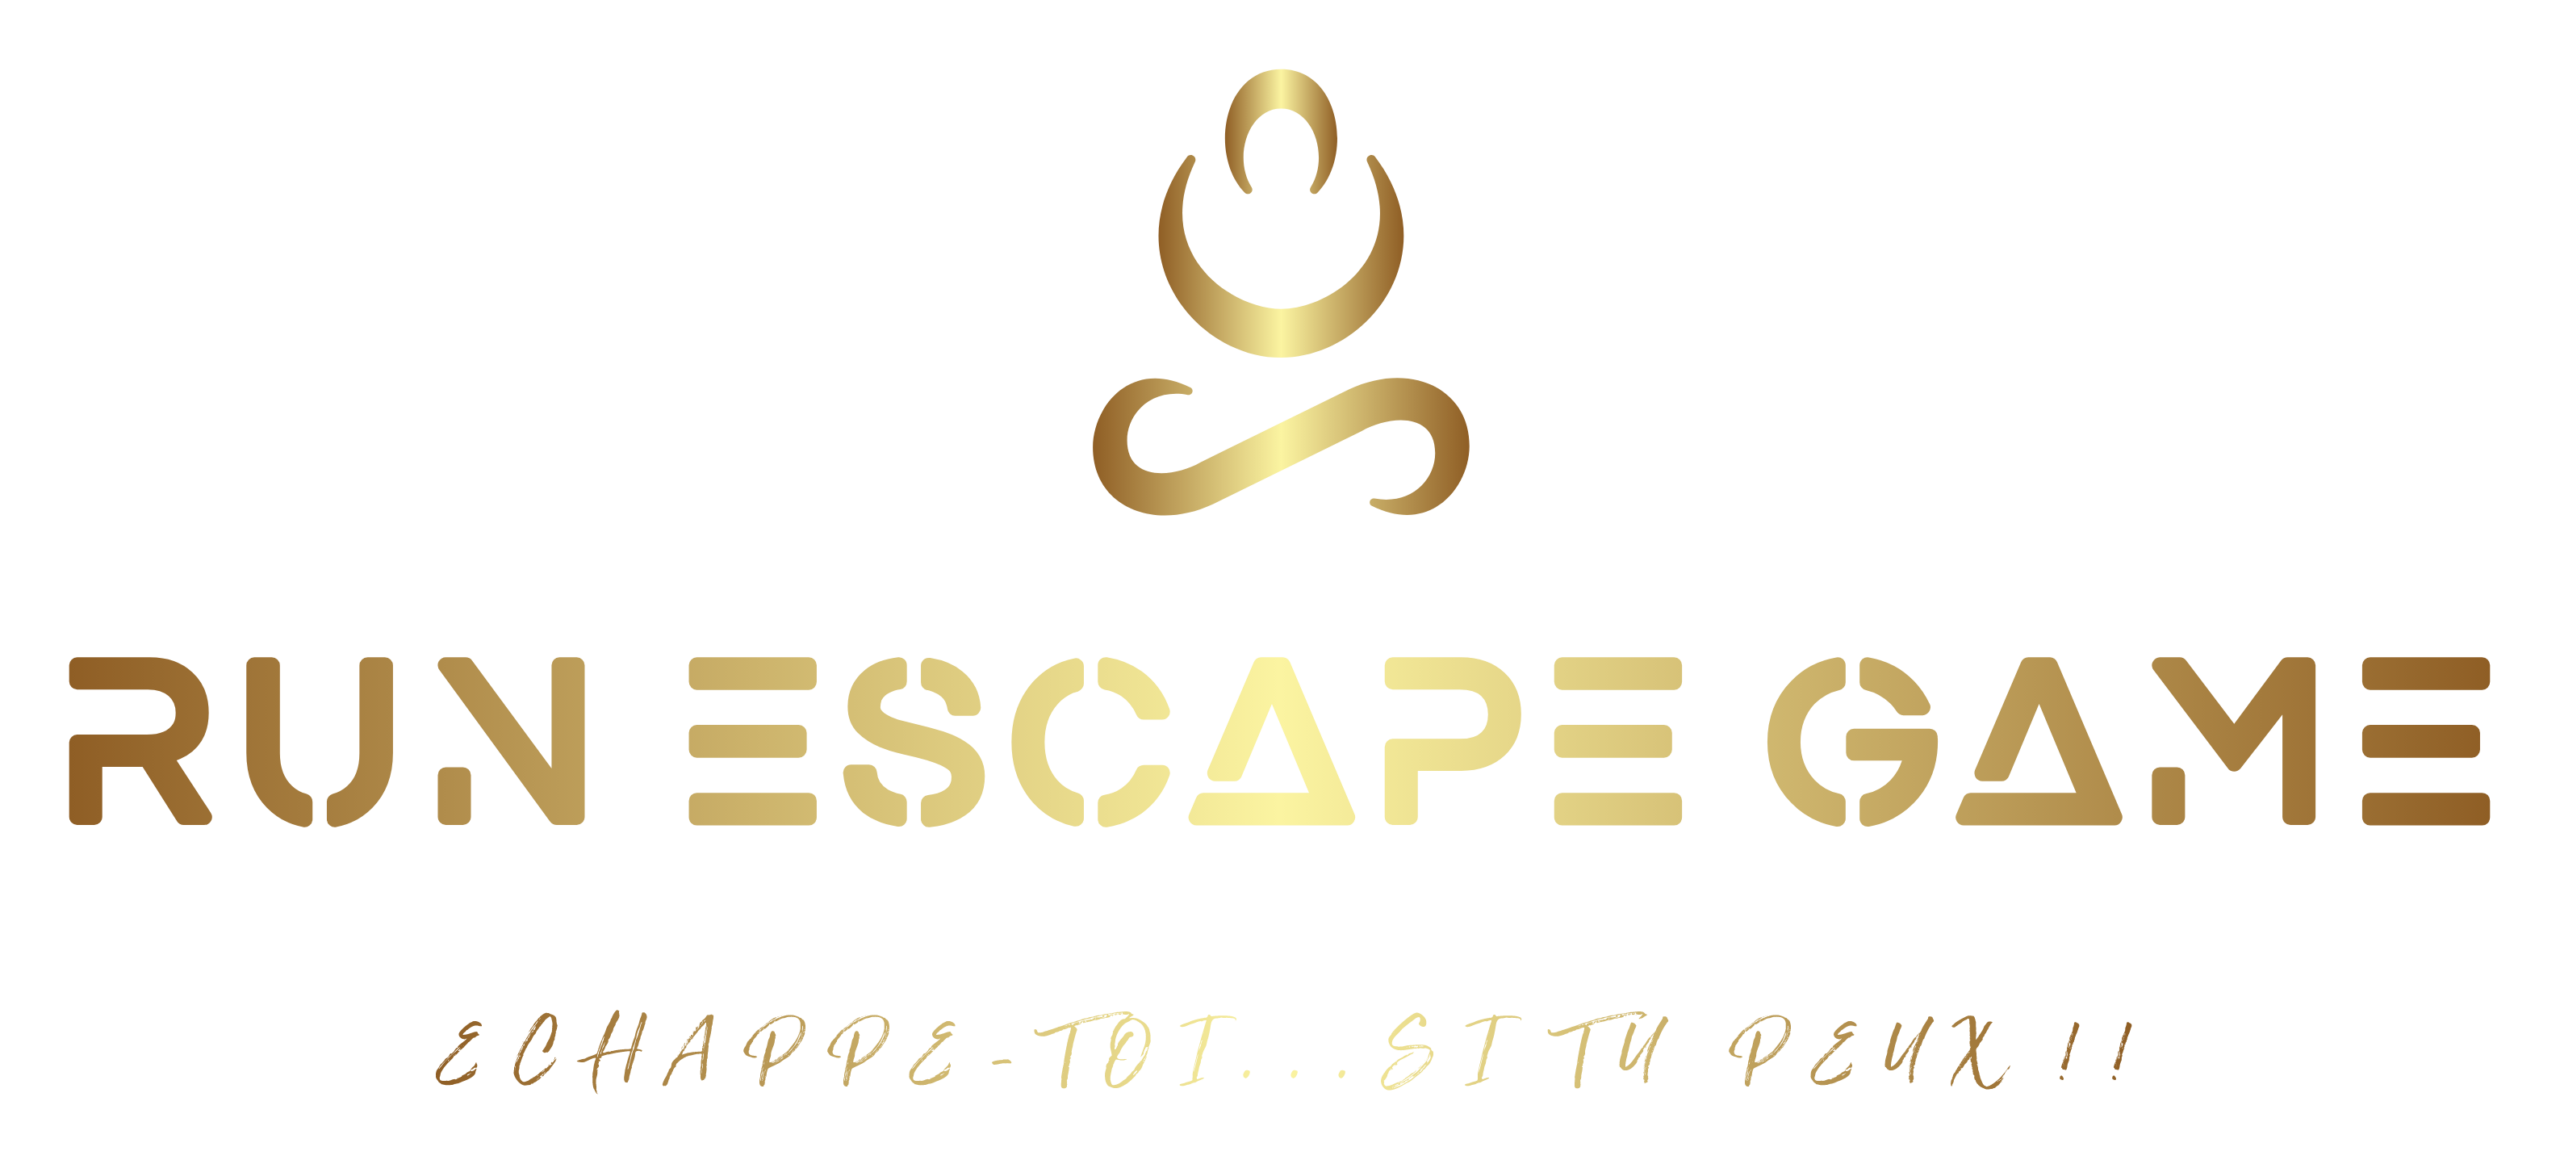 Run Escape Game